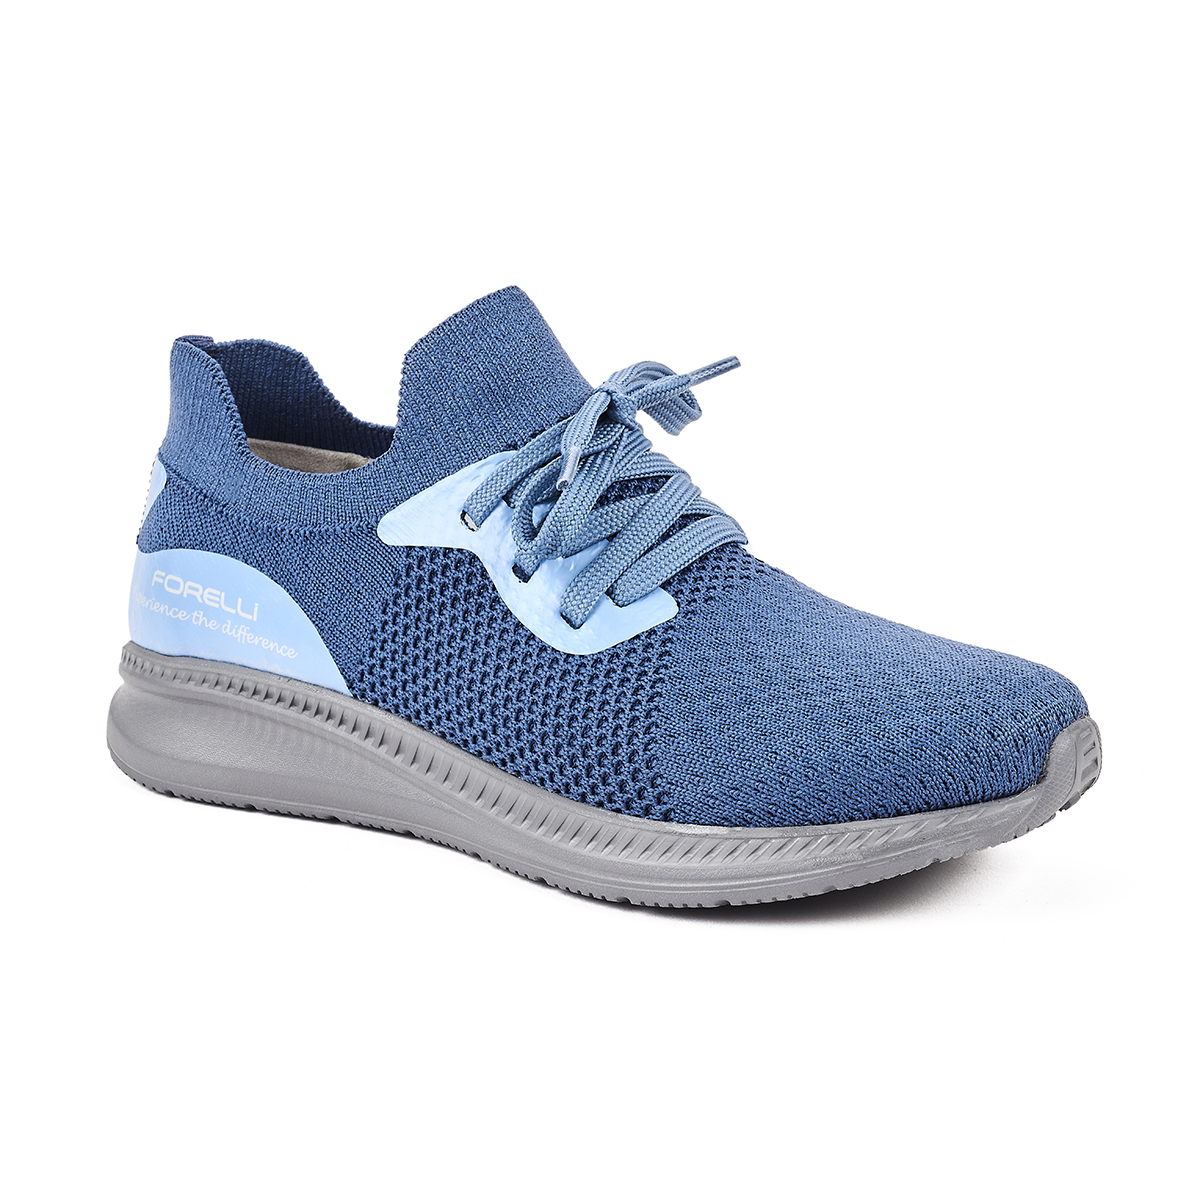 Forelli - Forelli AYLIS-G Comfort Kadın Ayakkabı Mavi